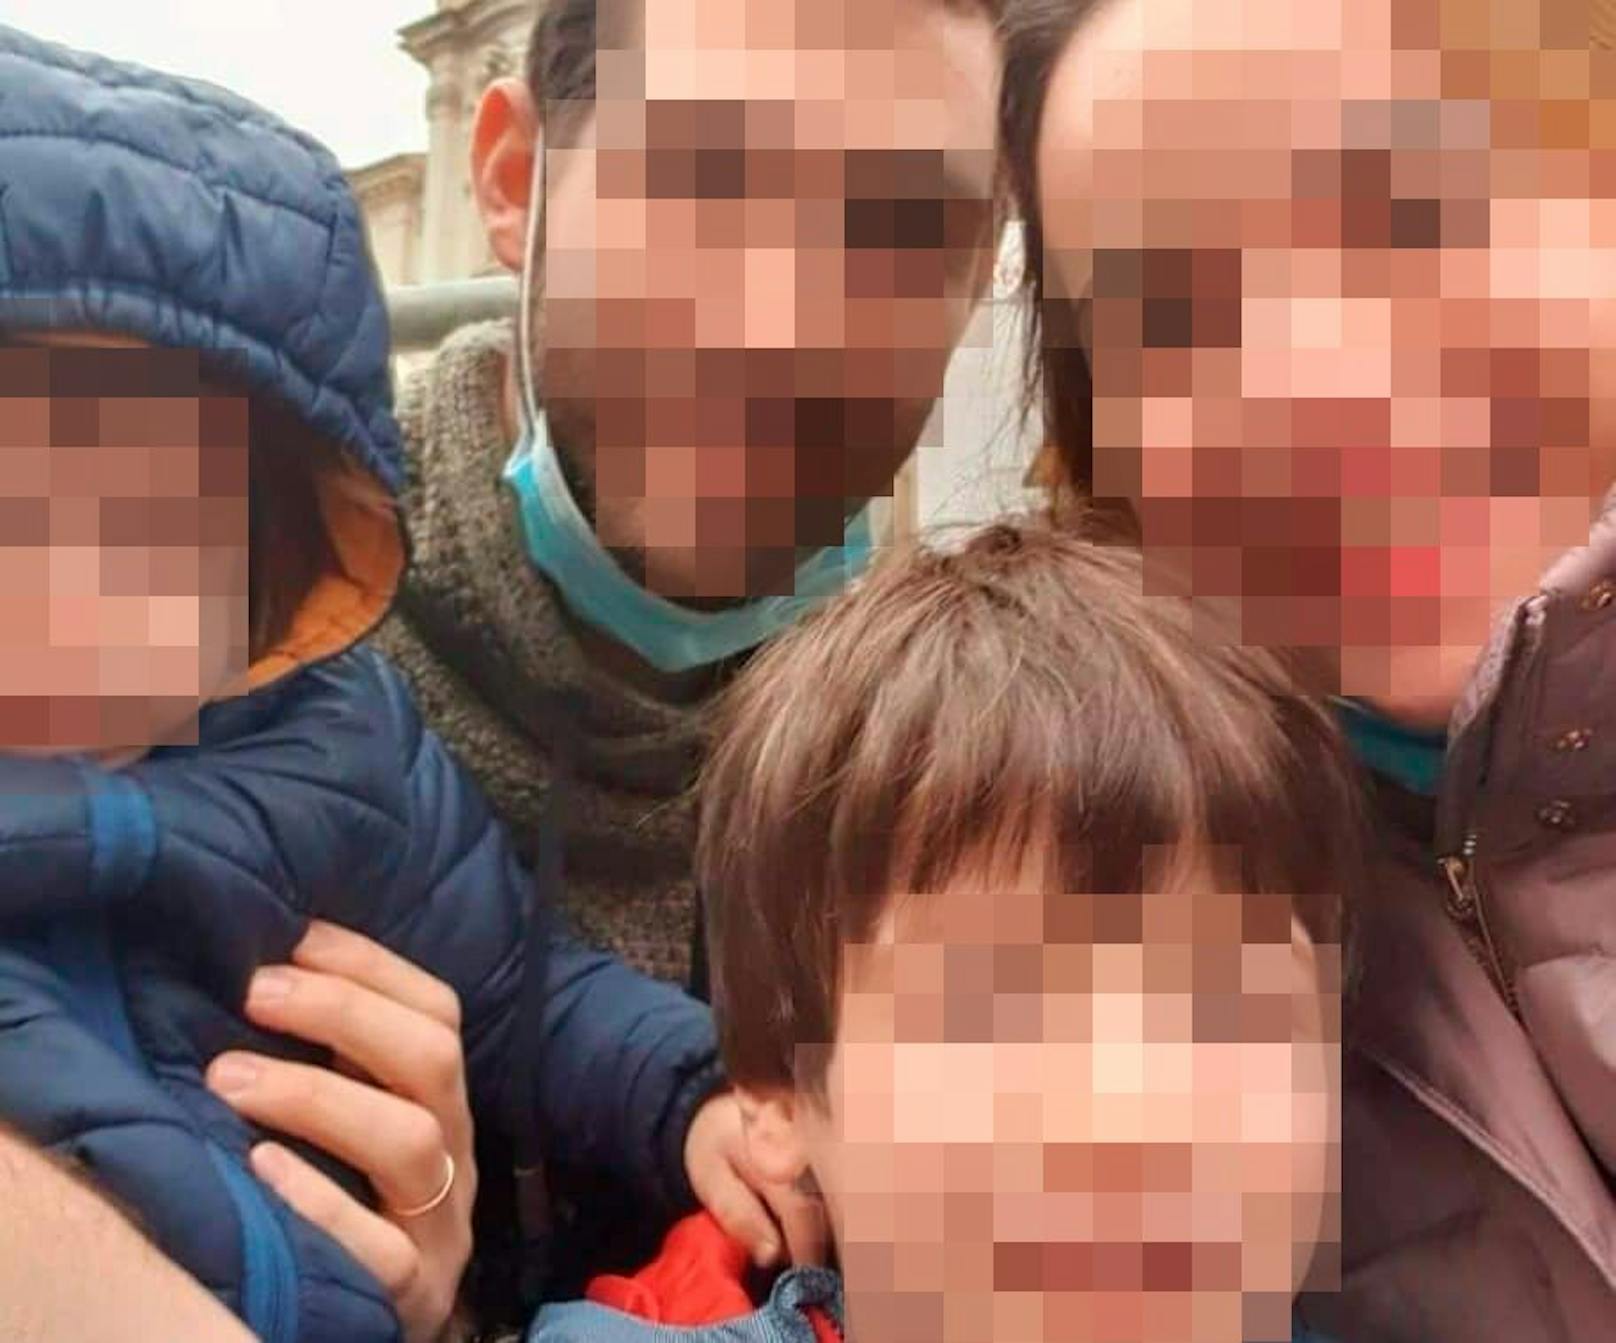 Eitans Familie wurde bei dem Seilbahn-Absturz ausgelöscht. Mama Tal, Papa Amit und sein kleiner Bruder Tom sind tot